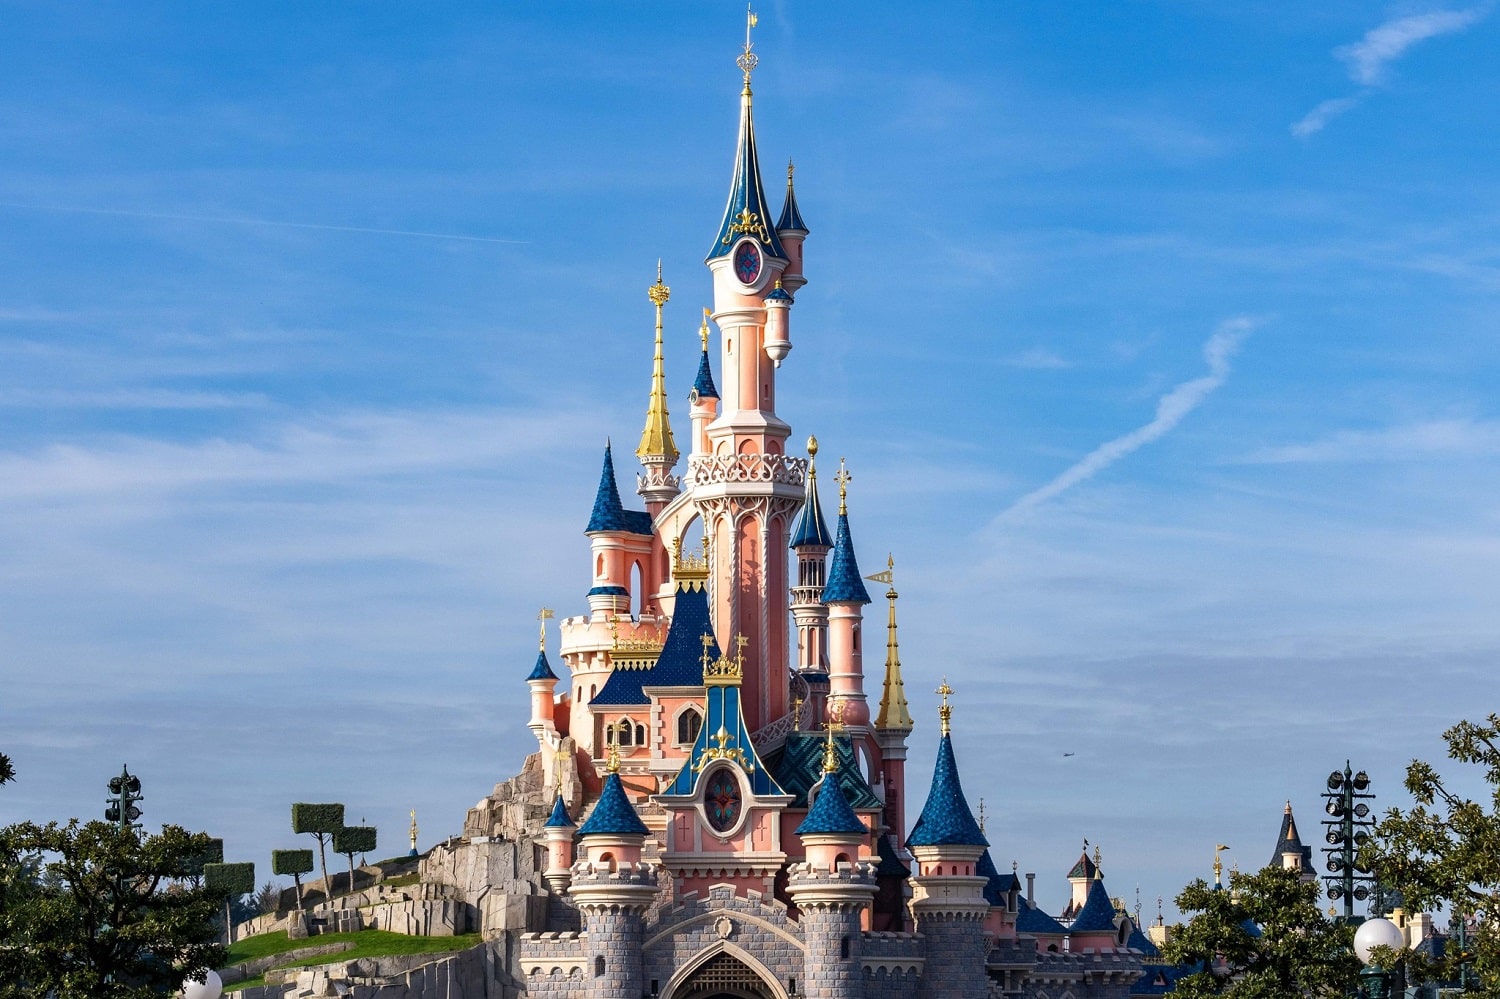 În vizită la Disneyland Paris: cum ajungi, unde stai, ce mănânci și multe alte ponturi